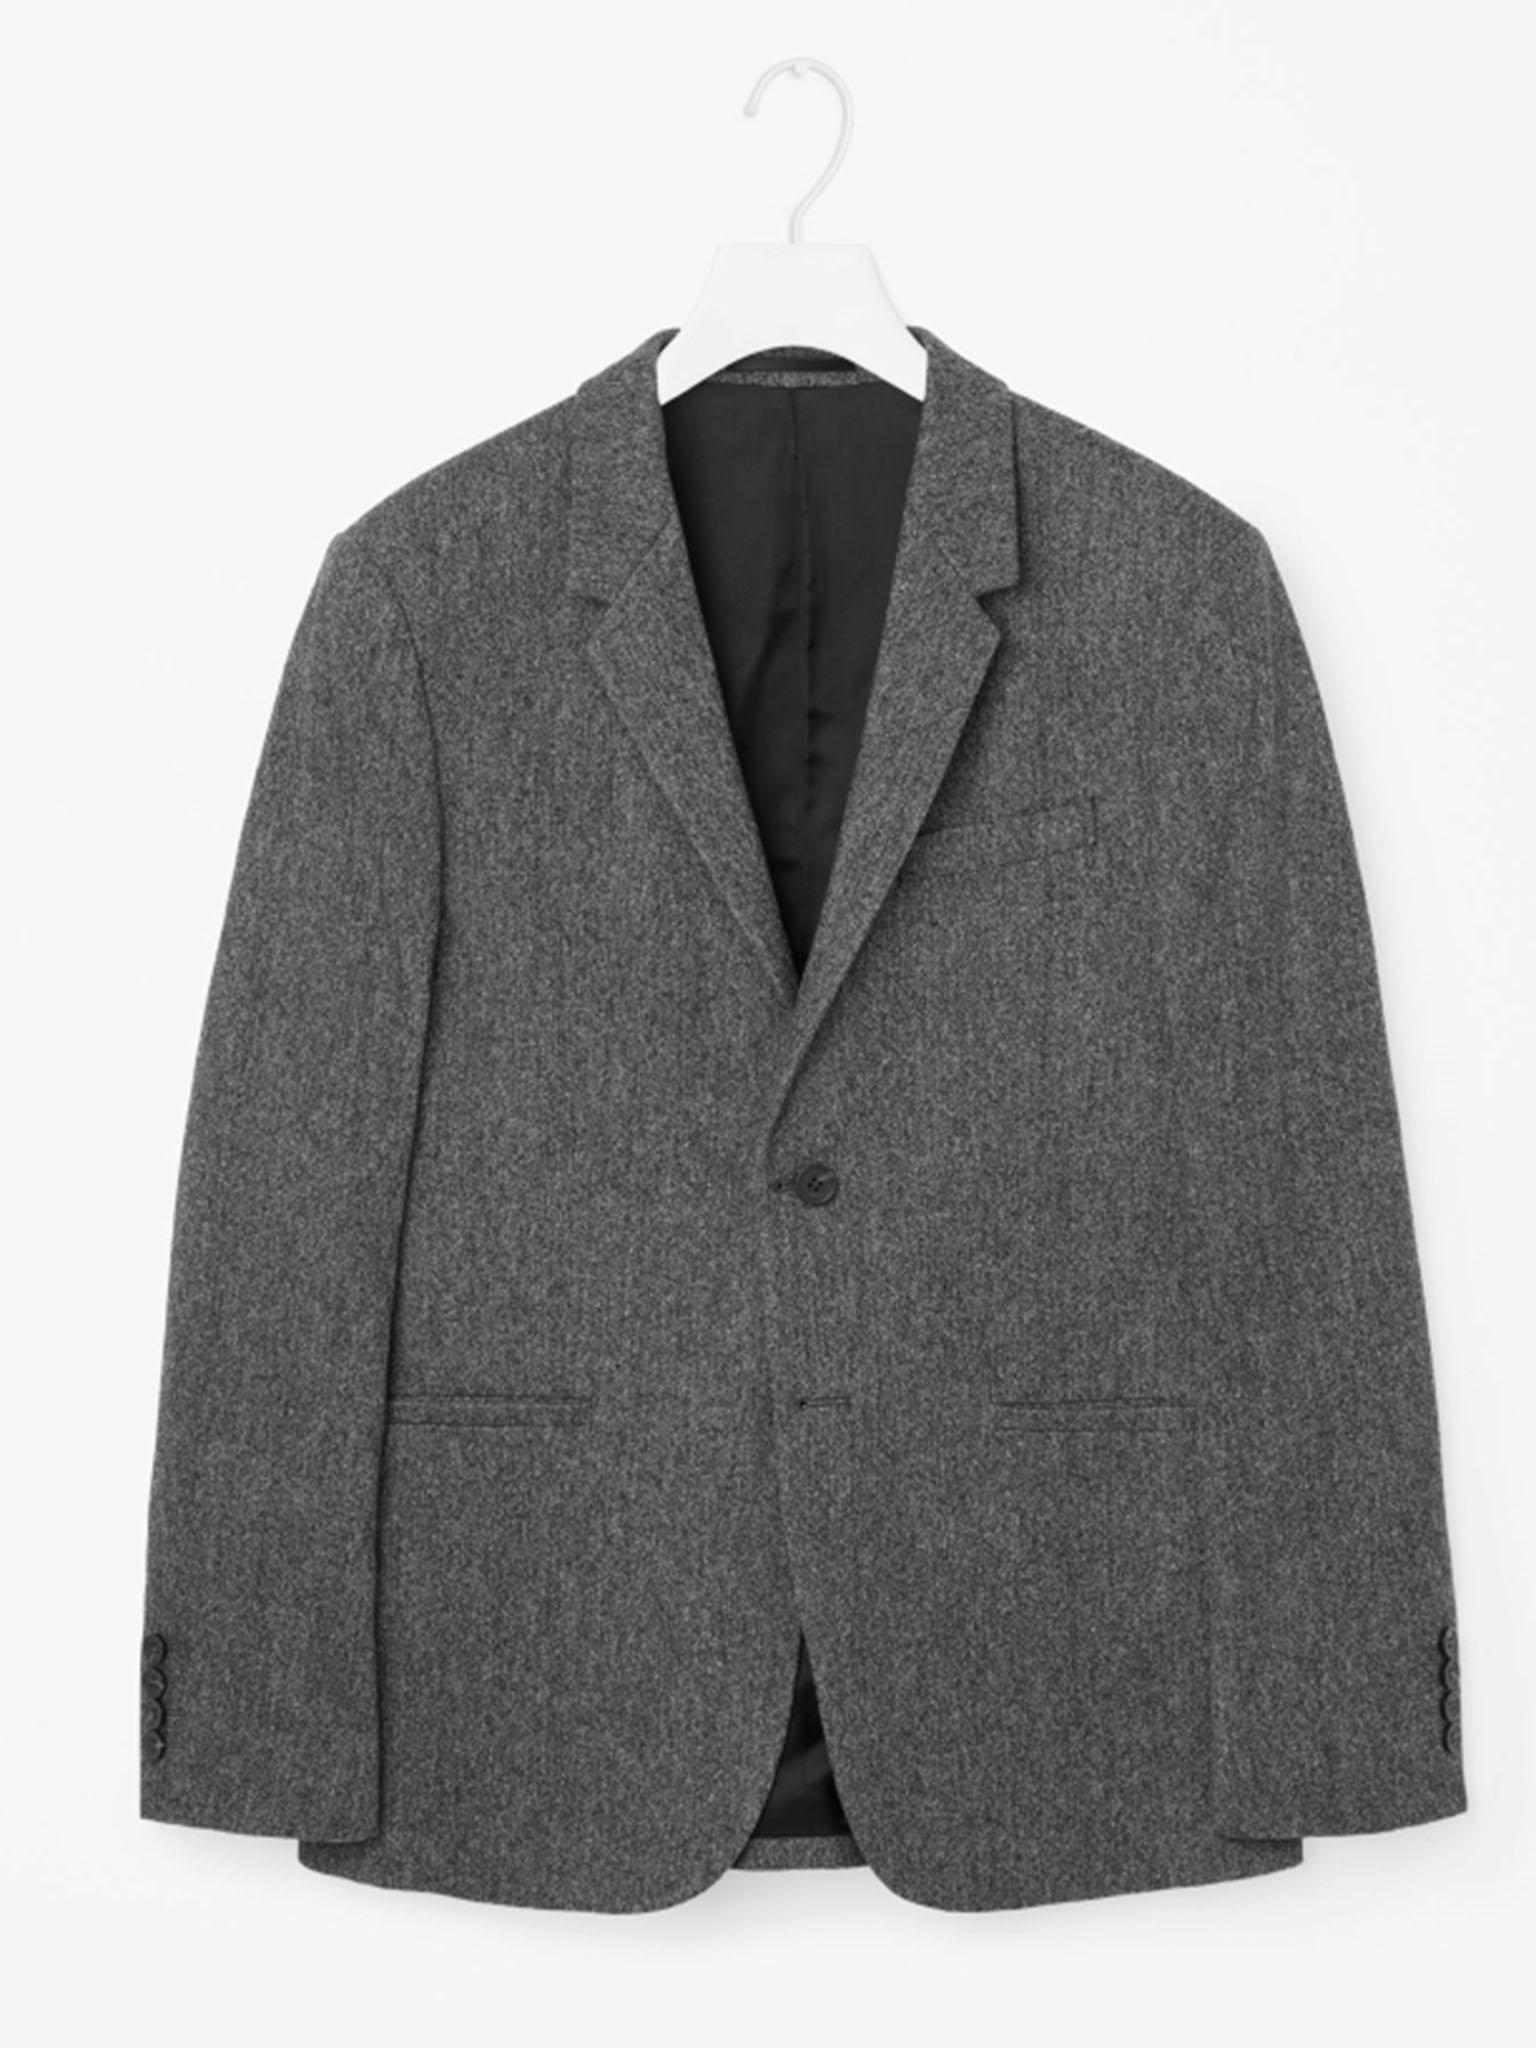 COS wool melange blazer, £175, cosstores.com